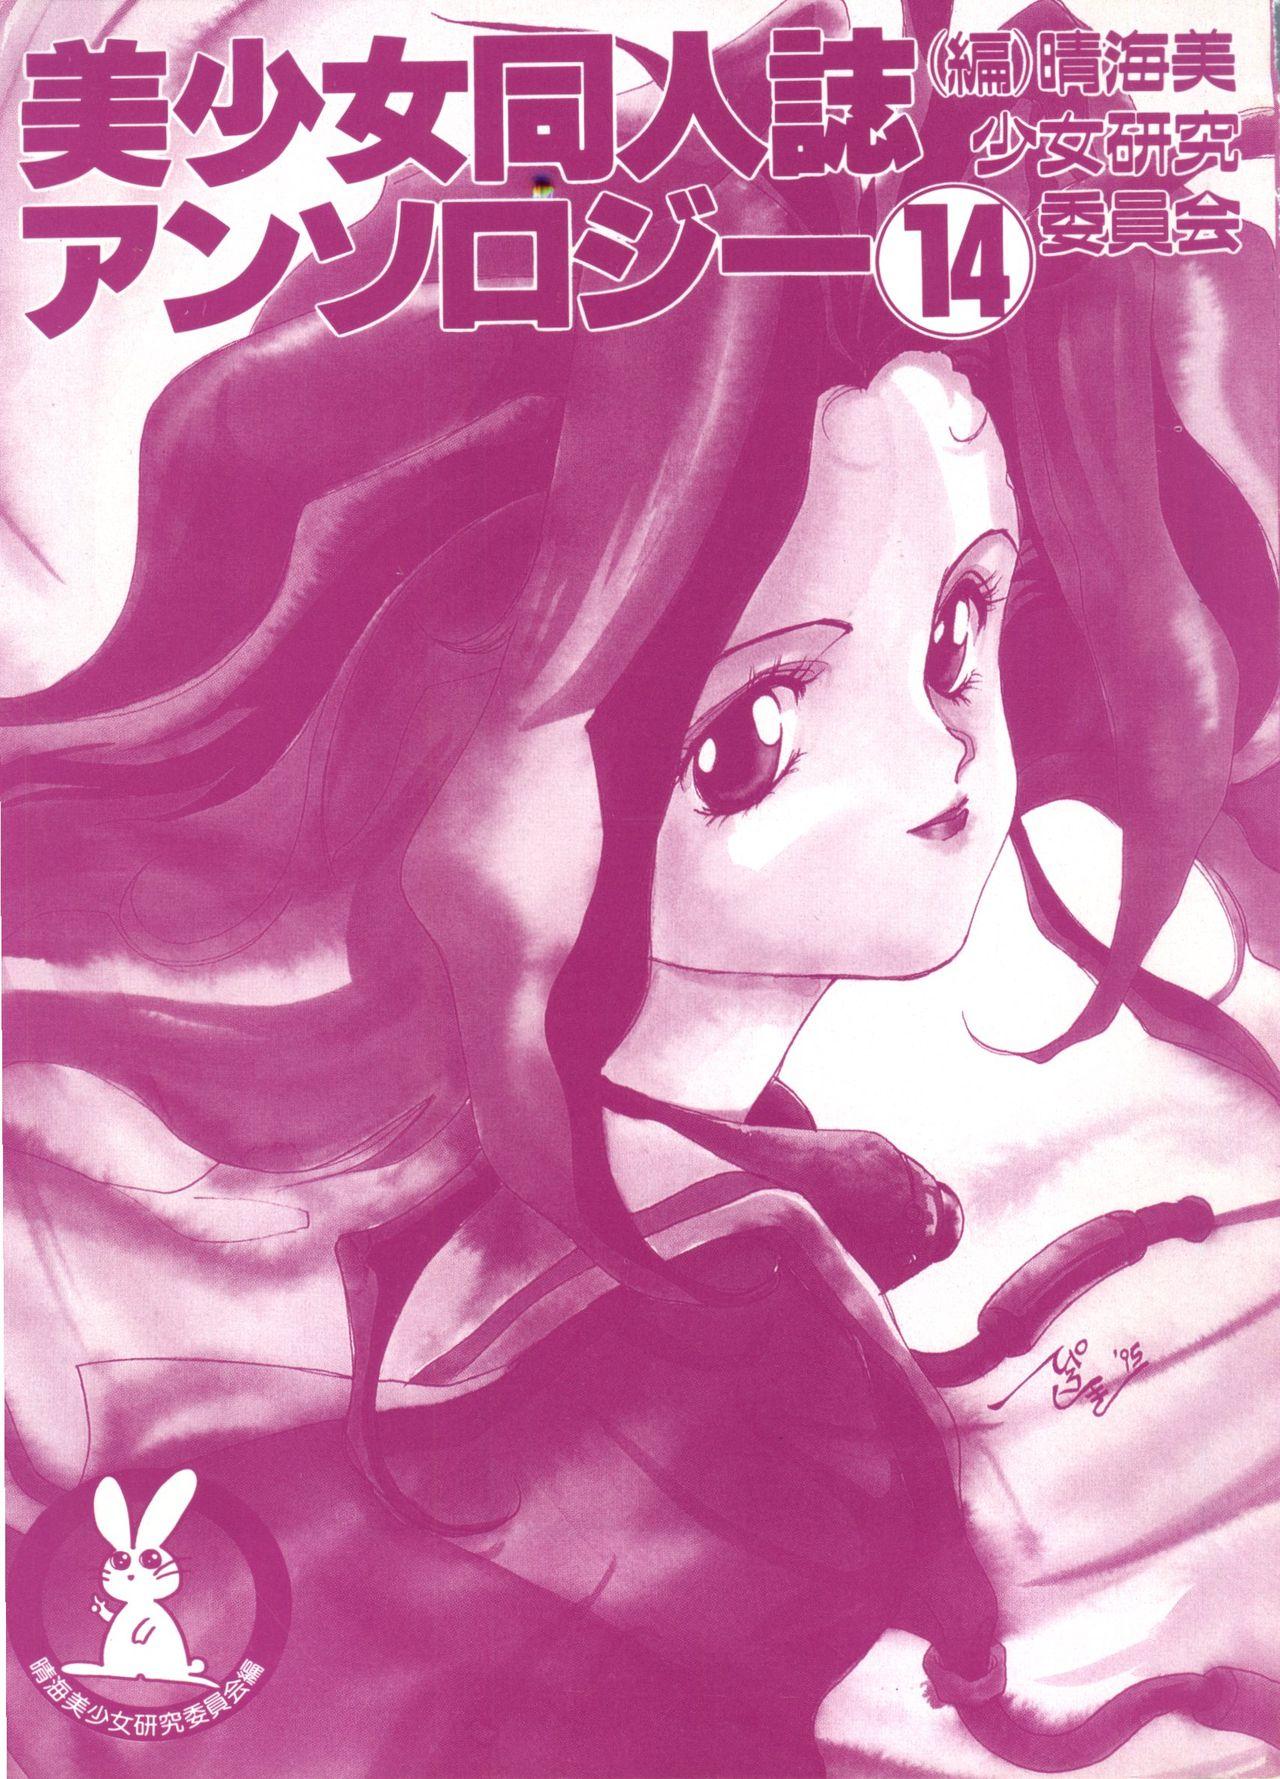 Bishoujo Doujinshi Anthology 14 2